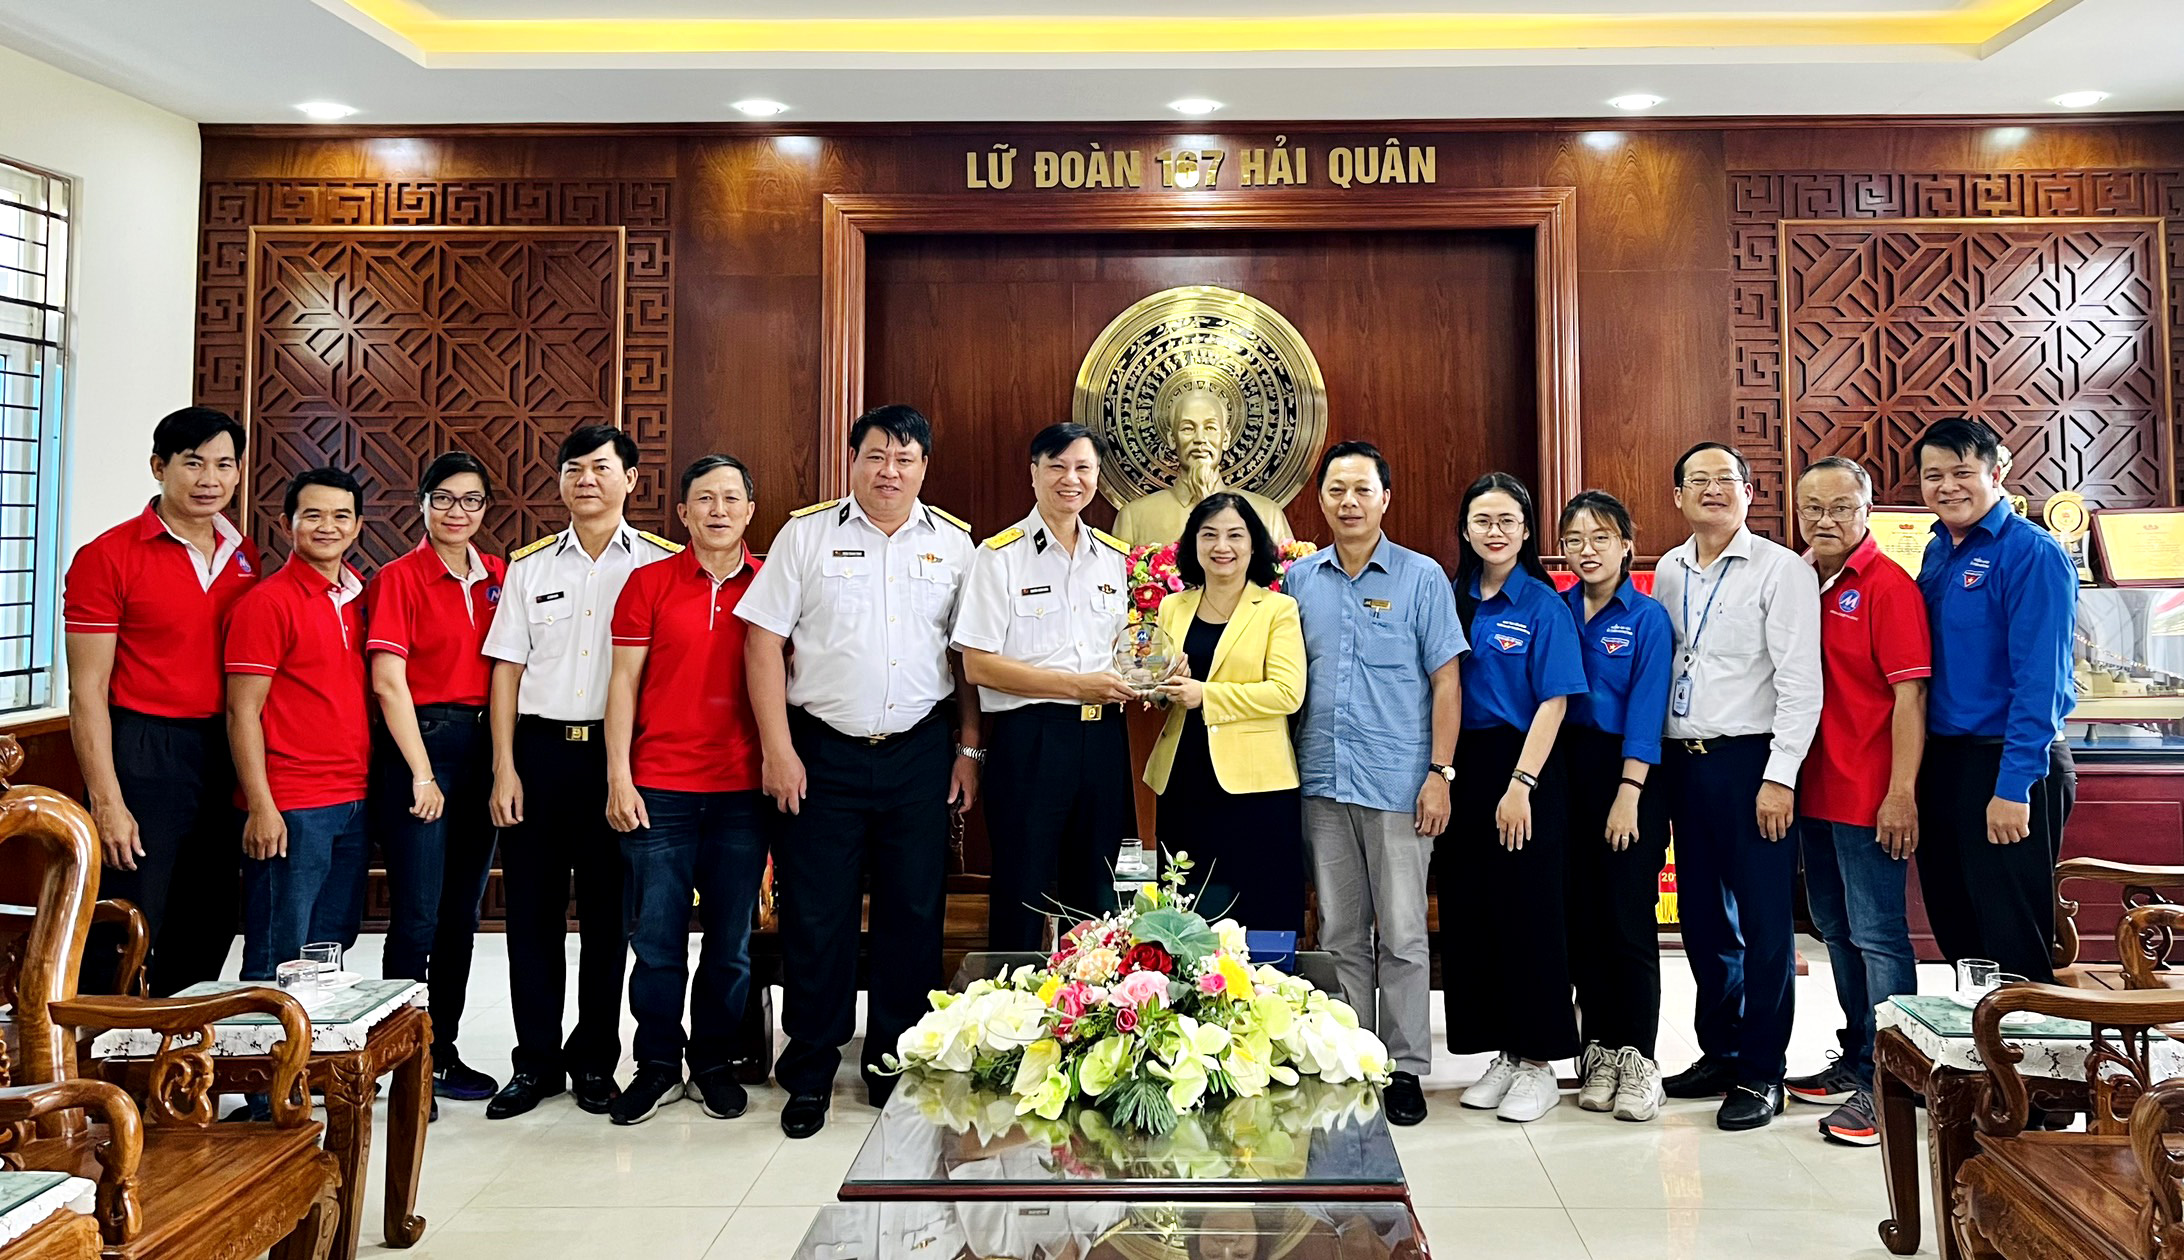 UFM tới thăm và làm việc với Lữ đoàn 167, Bộ Tư lệnh Vùng 2 Hải Quân nhân kỷ niệm Ngày thành lập Quân đội Nhân dân Việt Nam